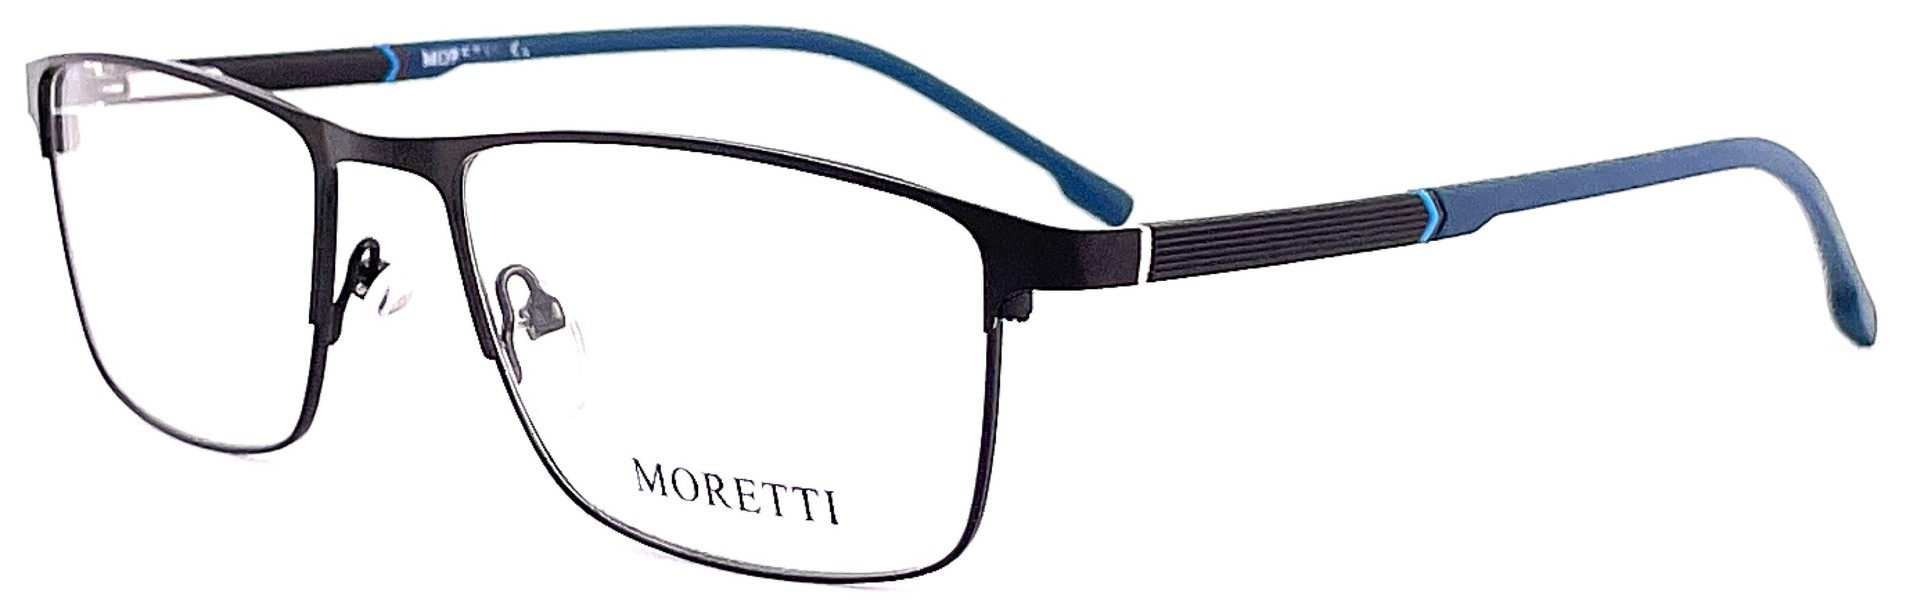 Moretti HE02-04 C1 2